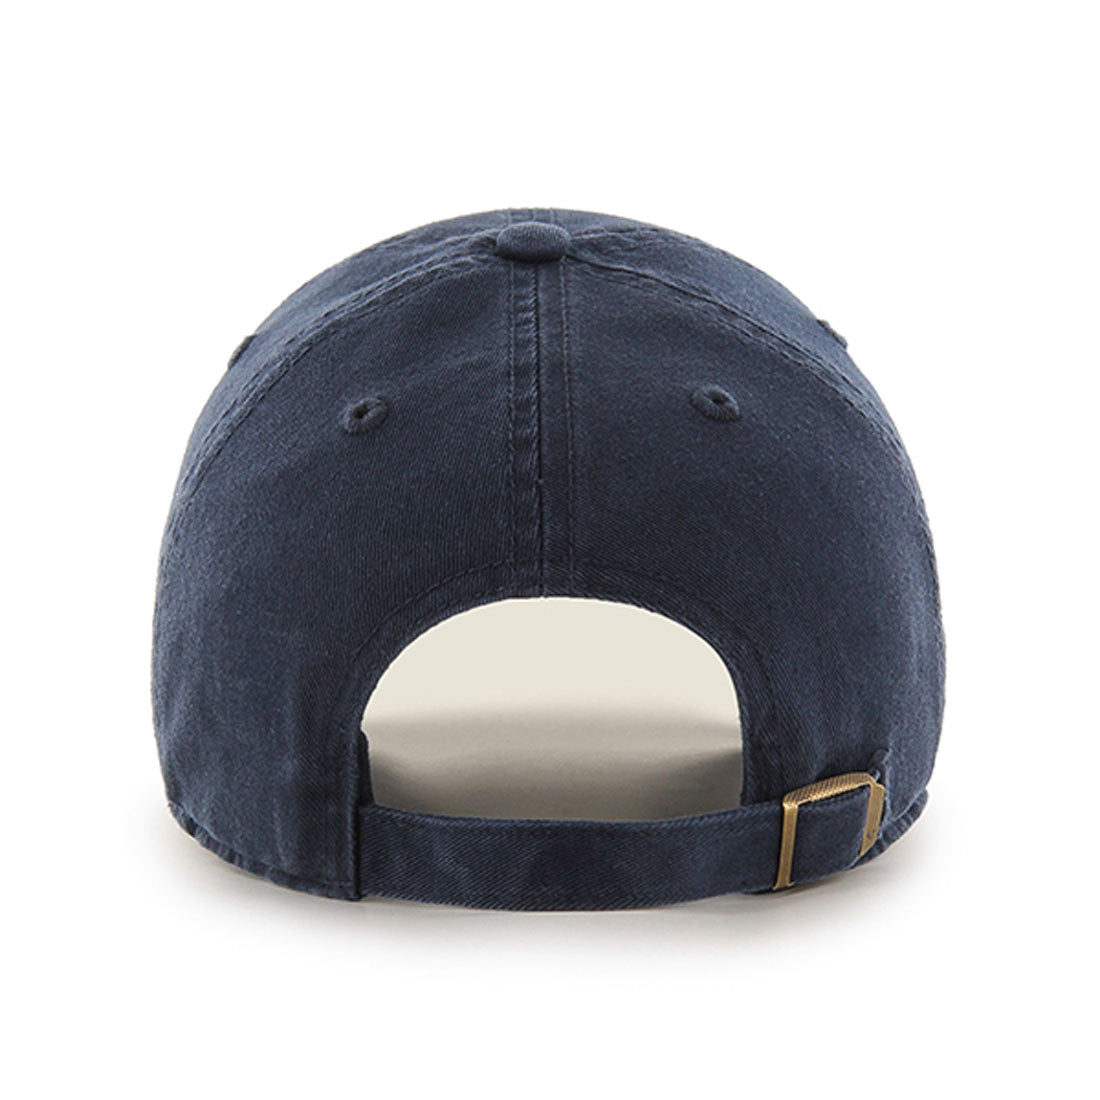 University Of California Berkeley Law adjustable hat-Navy-Shop College Wear